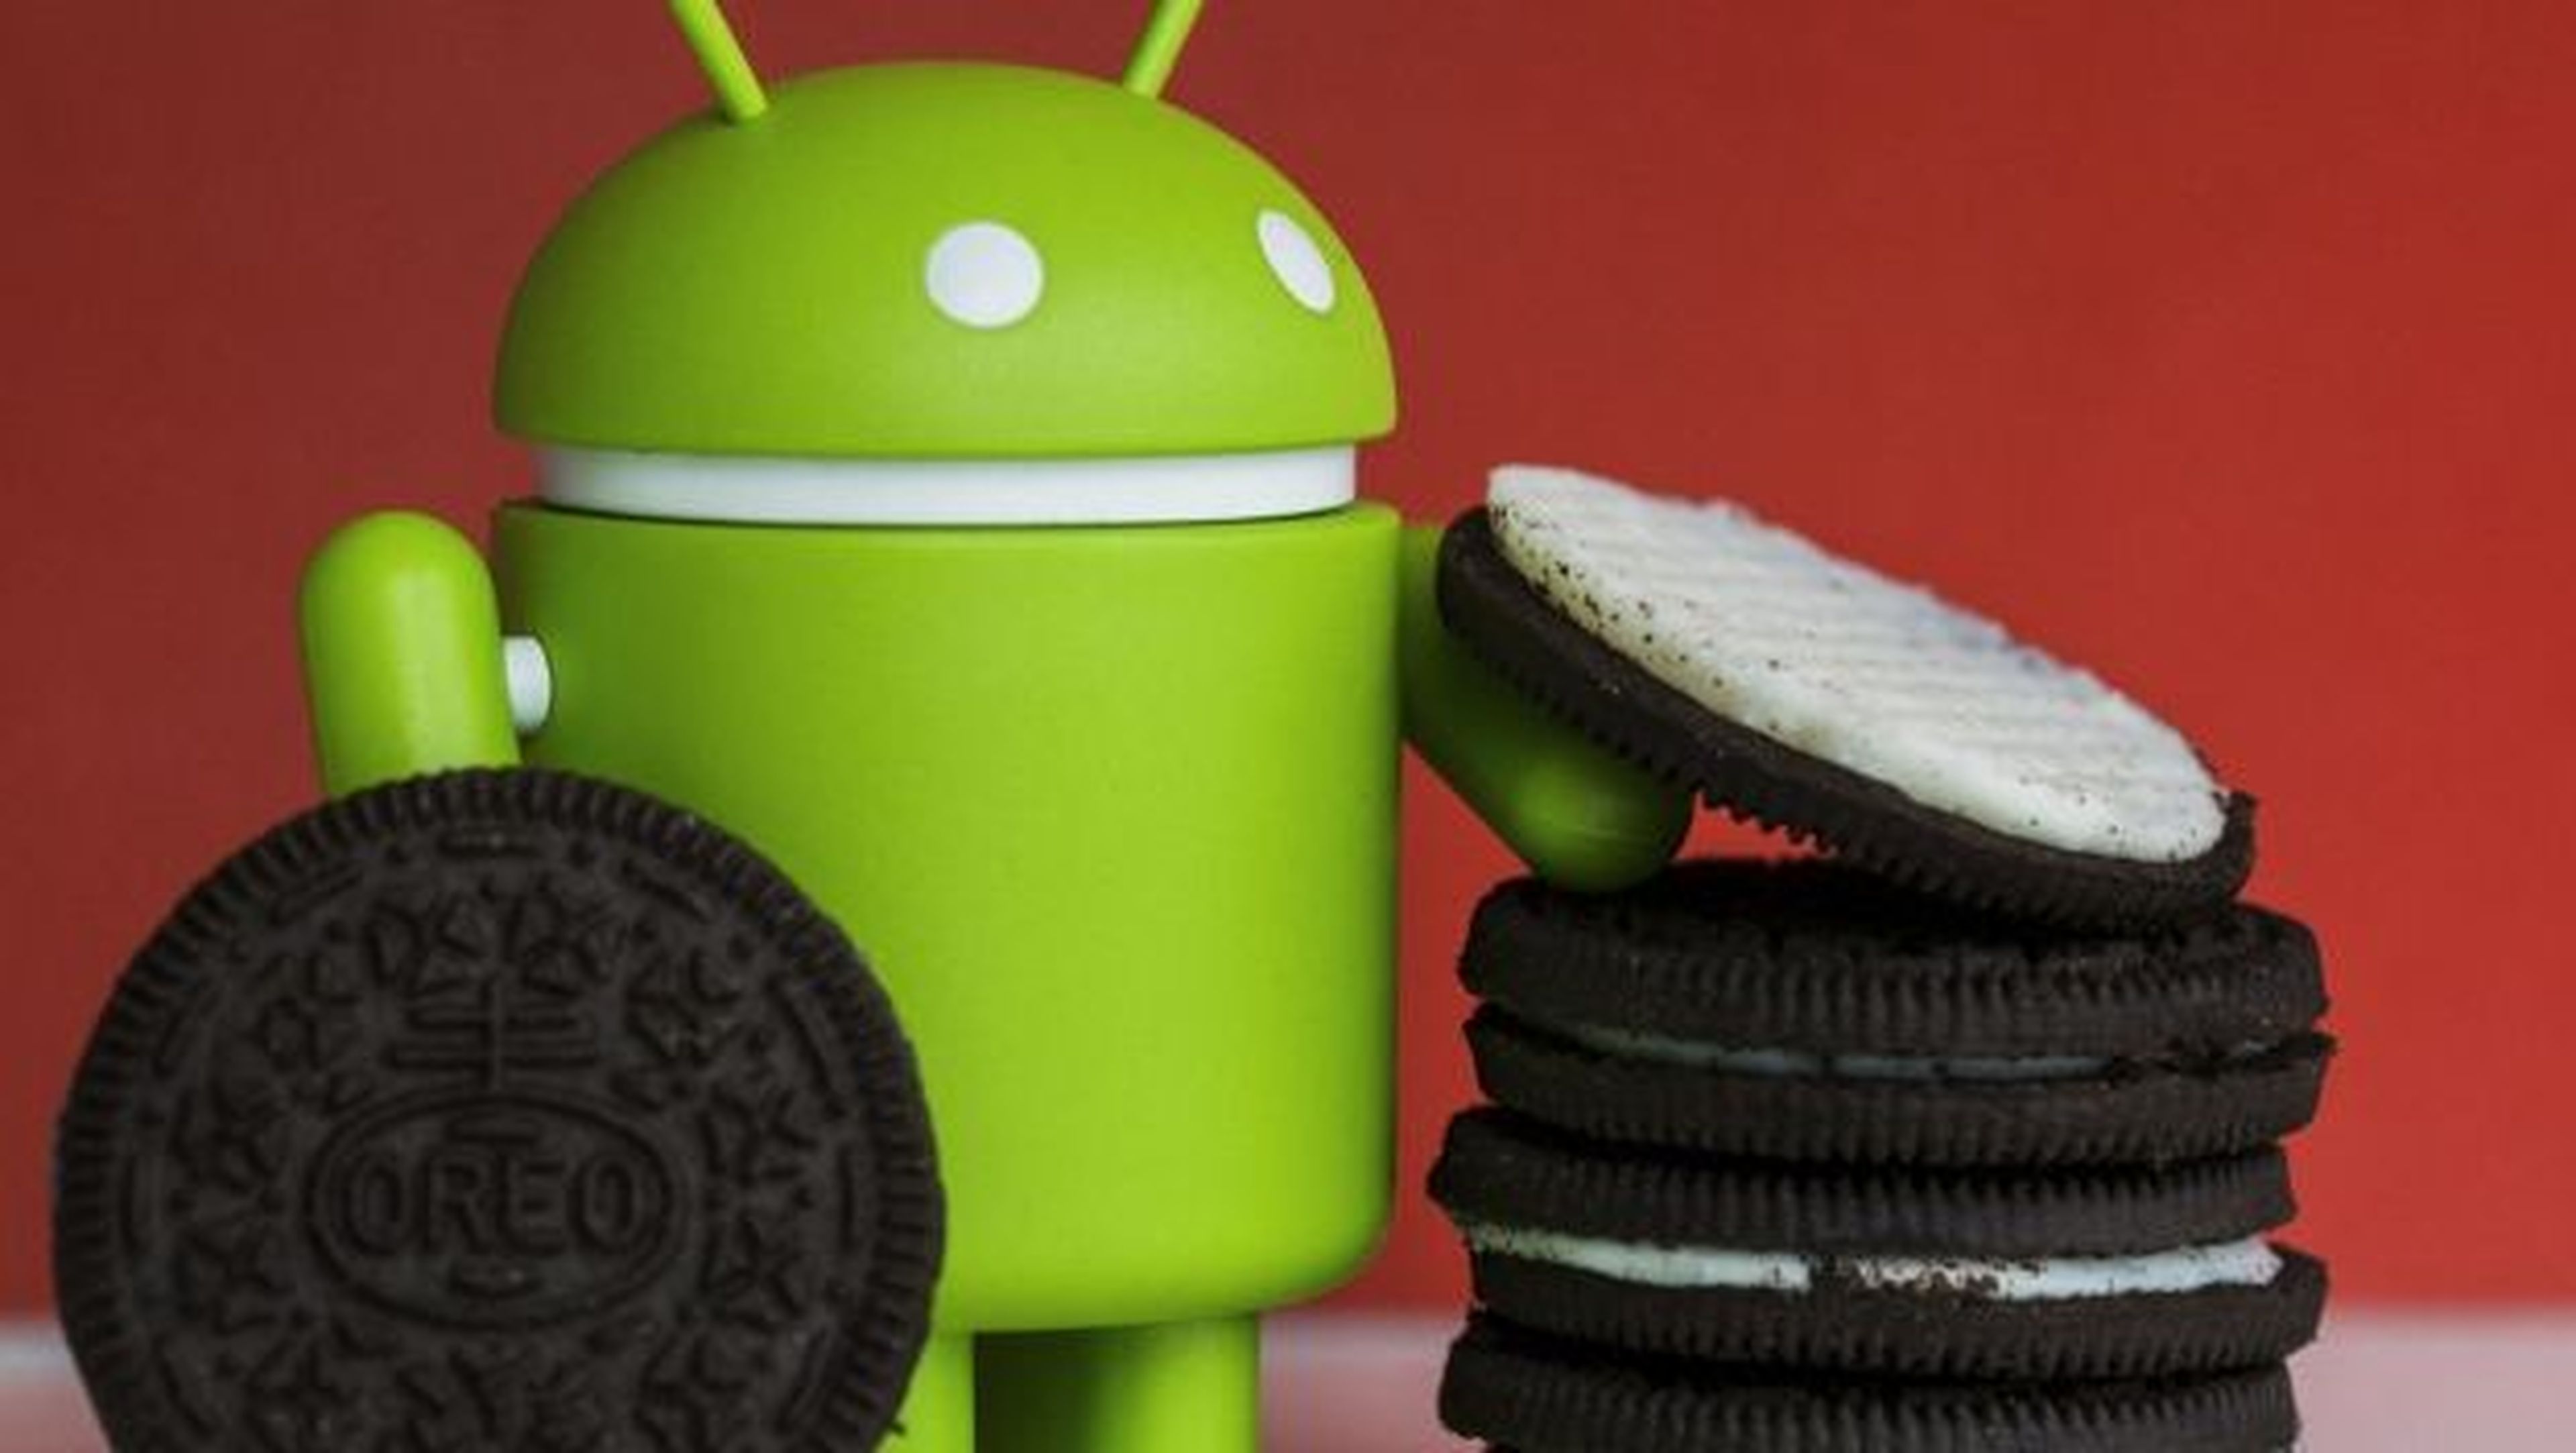 Novedades Android O, Android 8.0